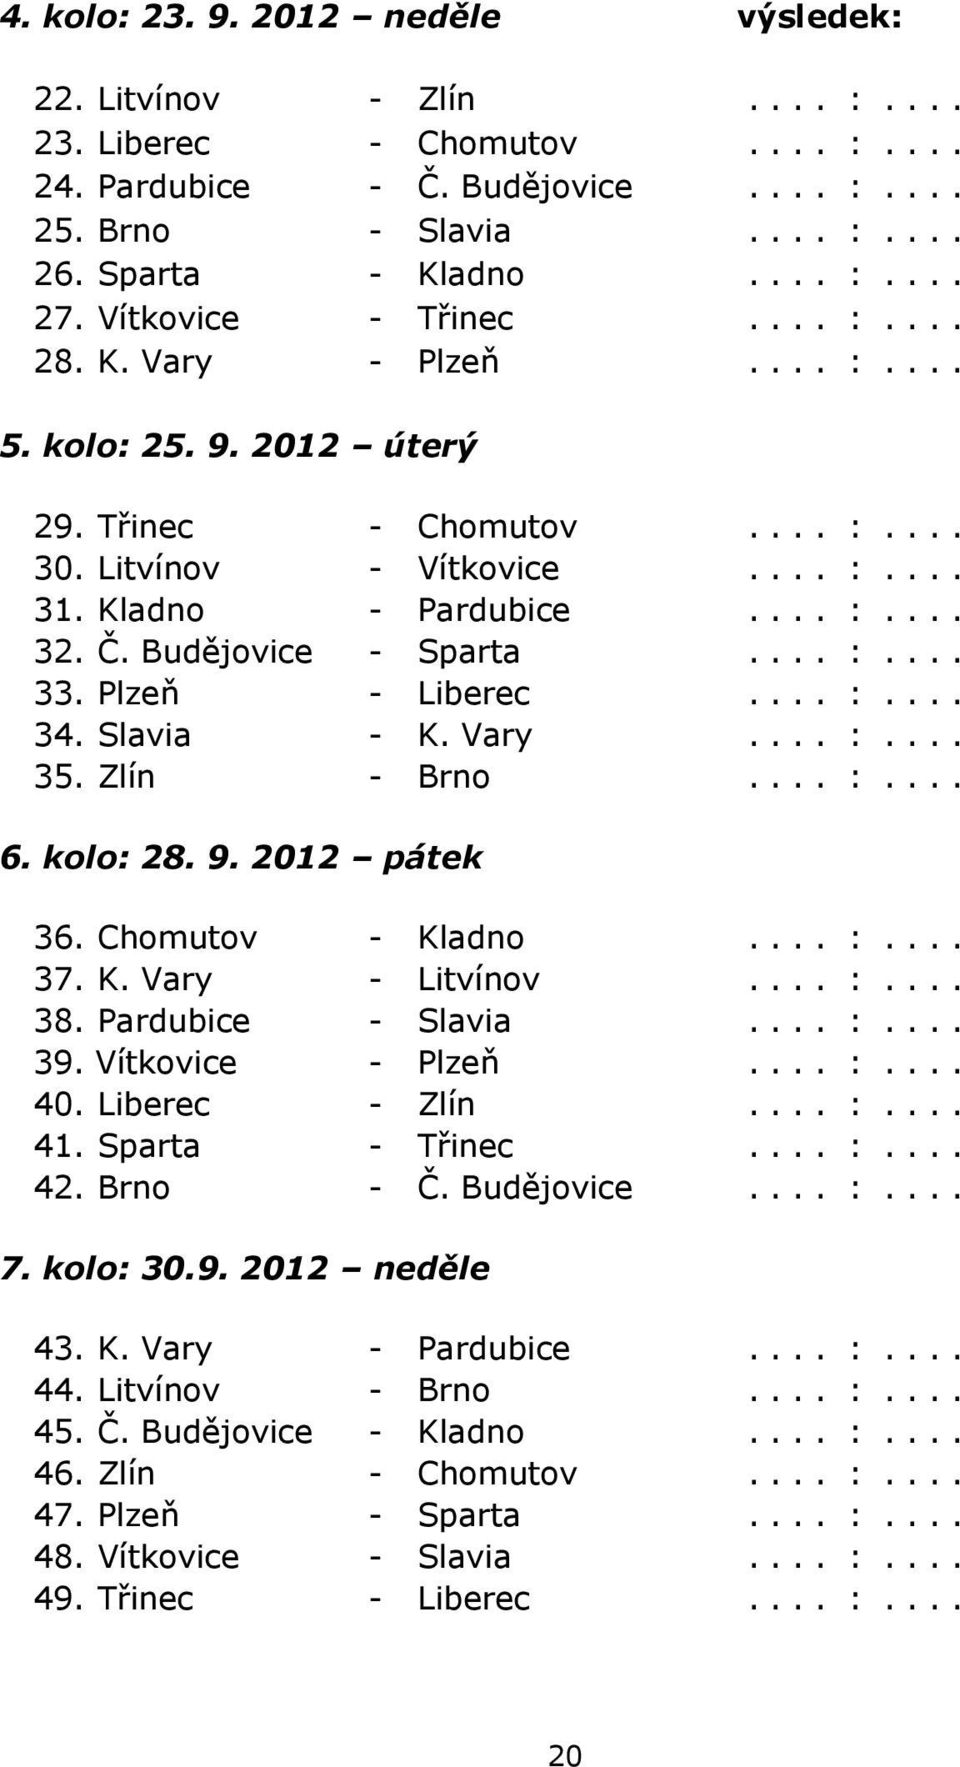 Budějovice - Sparta.... :.... 33. Plzeň - Liberec.... :.... 34. Slavia - K. Vary.... :.... 35. Zlín - Brno.... :.... 6. kolo: 28. 9. 2012 pátek 36. Chomutov - Kladno.... :.... 37. K. Vary - Litvínov.